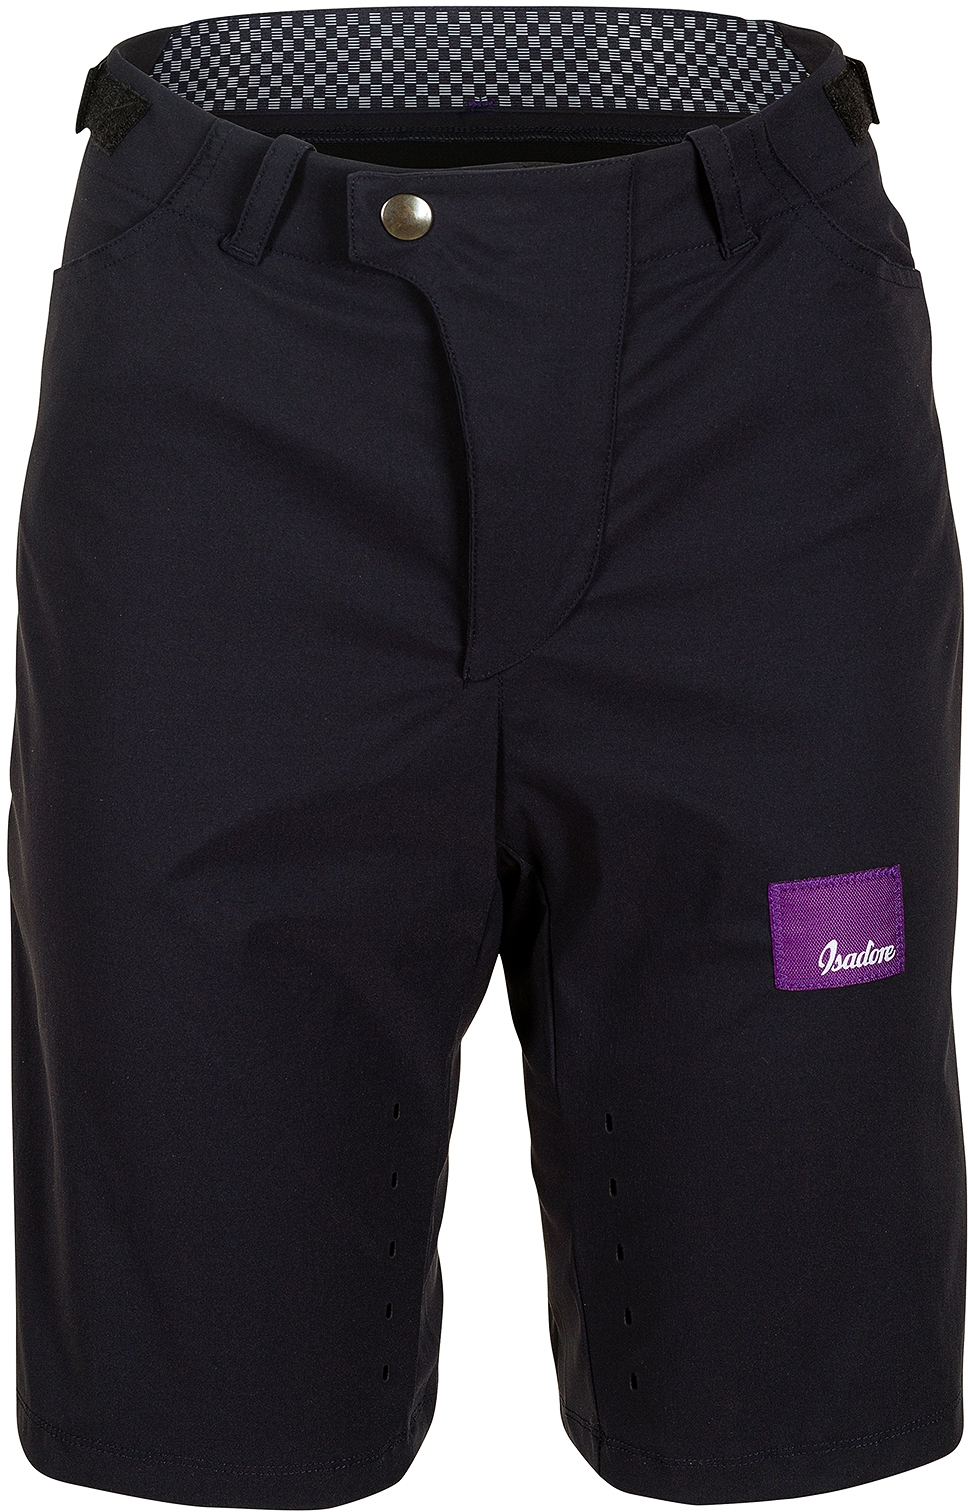 E-shop Isadore Women's Off-road Shorts - Black L